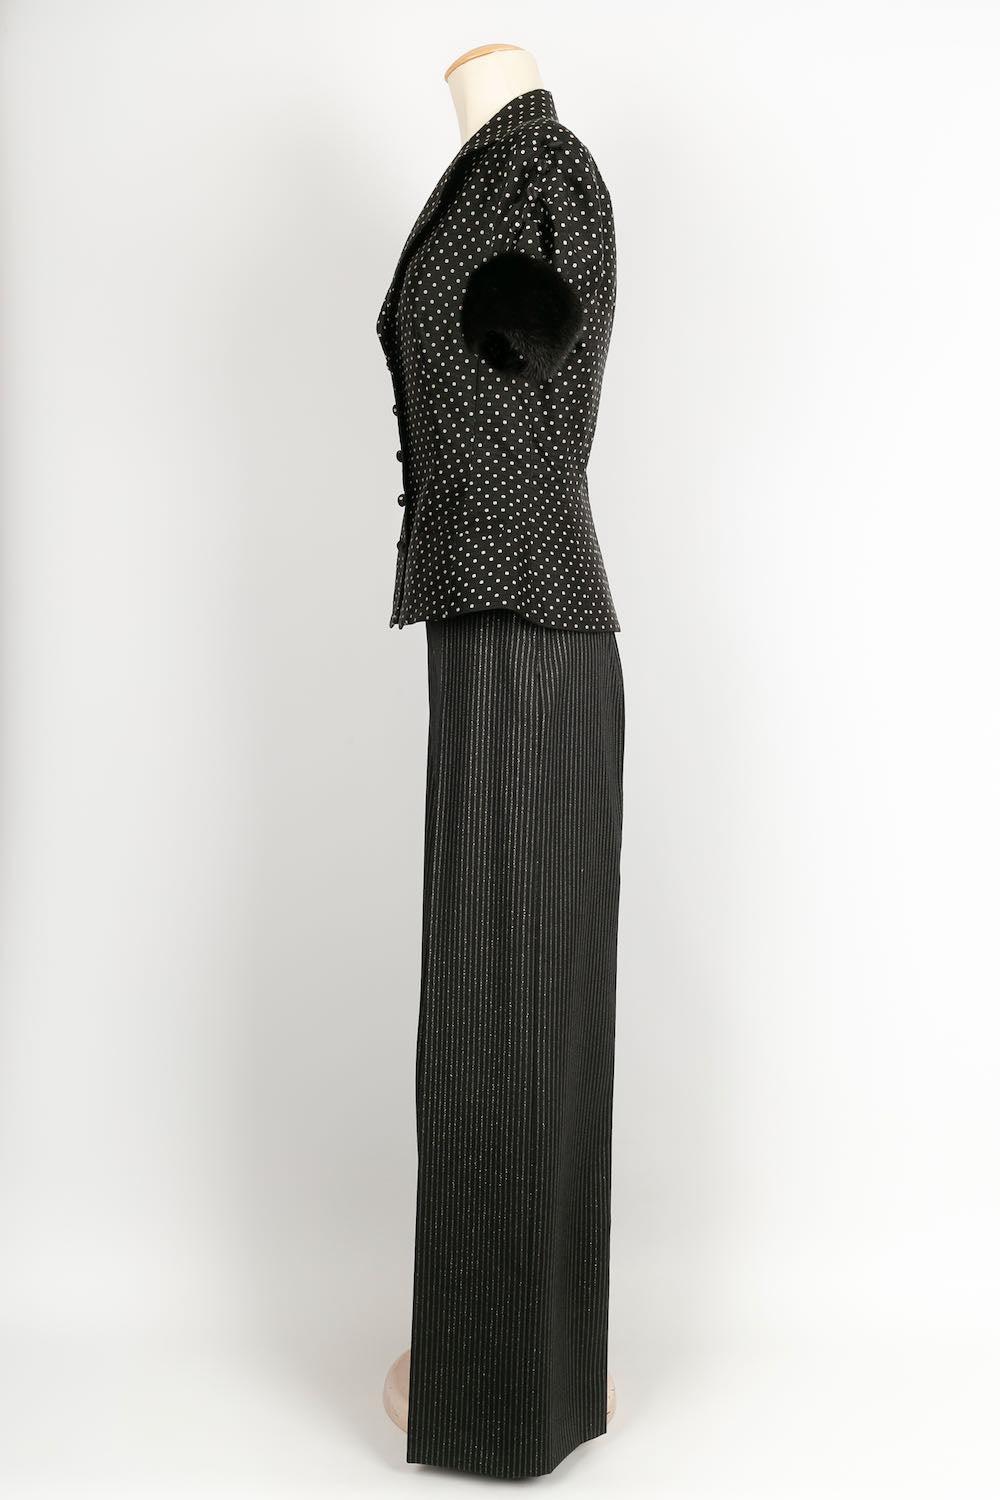 Dior -(Fabriqué en Italie) Costume en soie et laine avec garniture en vison. Taille indiquée 38FR pour le pantalon et 40FR pour le haut.

Informations complémentaires : 

Dimensions : Haut : épaules : 40 cm, Poitrine : 42 cm, Taille : 38 cm,